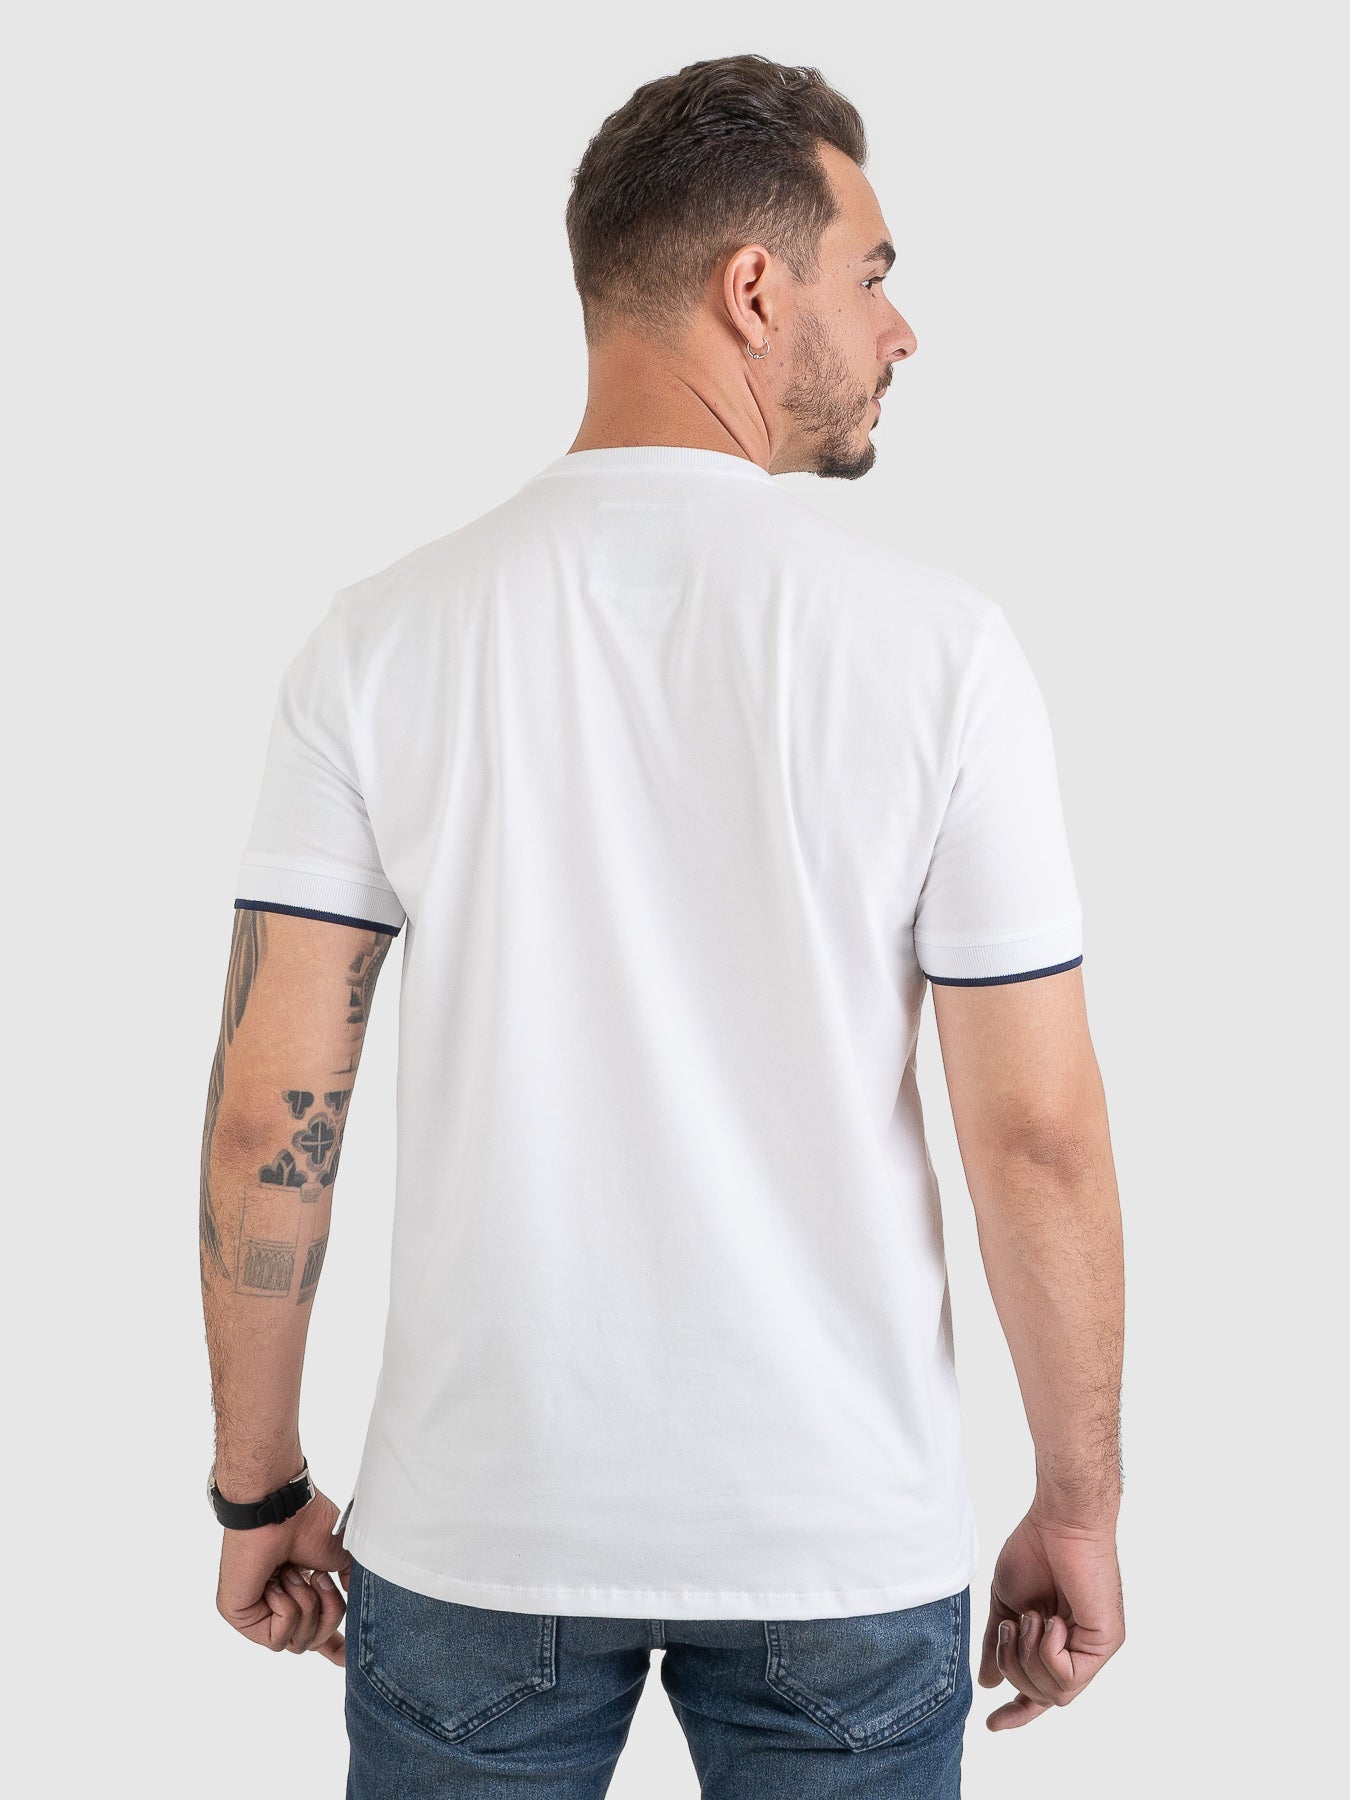 Camiseta Confort Branca e Marinho MVCK